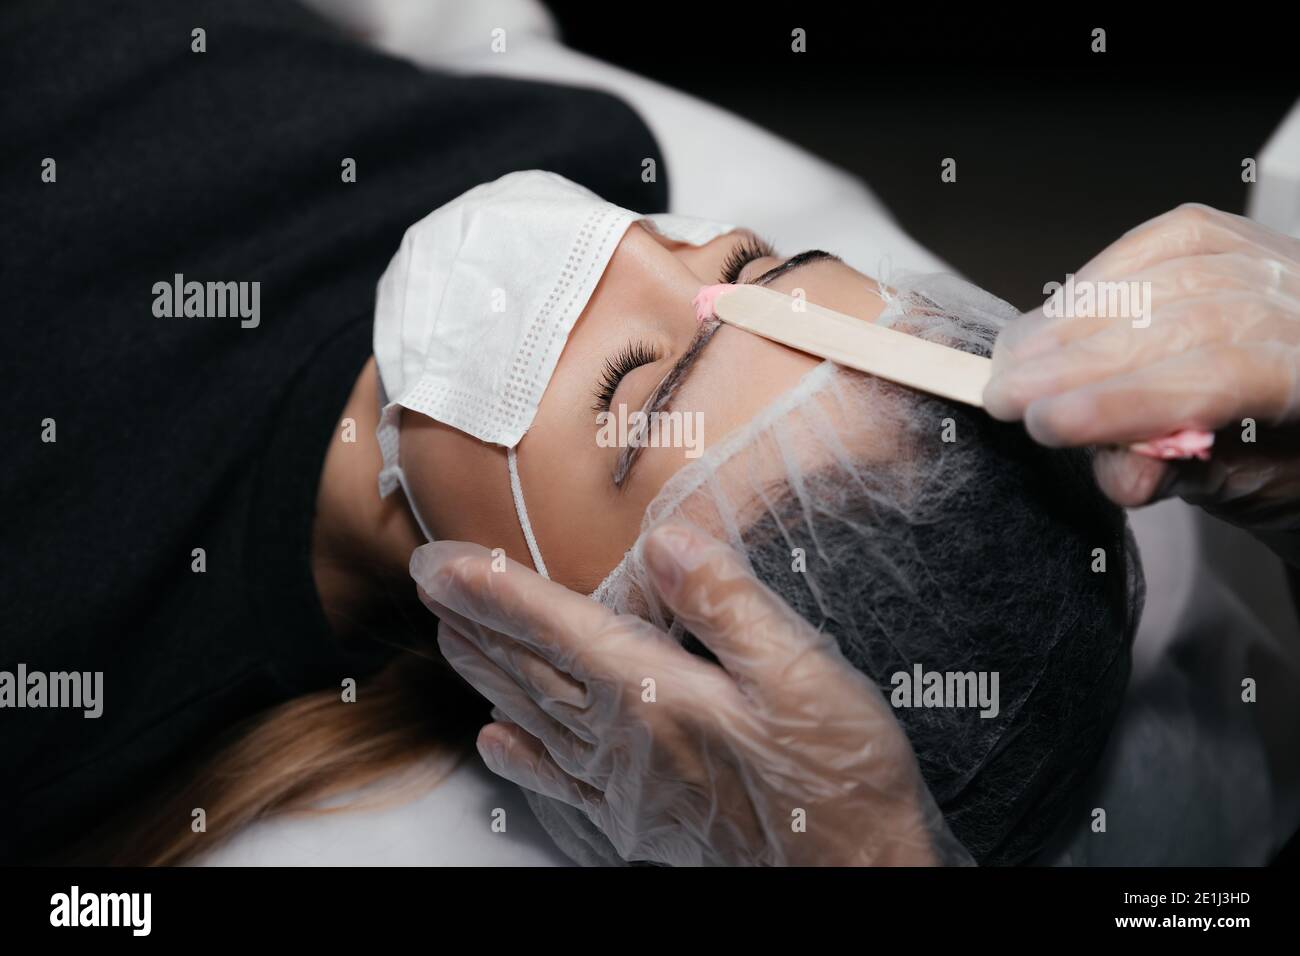 Gesichtshaarentfernung Verfahren durch heißes Wachs auf Holzstab,  Vorbereitung vor Permanent Make-up Tattoo auf Augenbrauen. Sicheres  Verfahren mit medizinischen Masken A Stockfotografie - Alamy